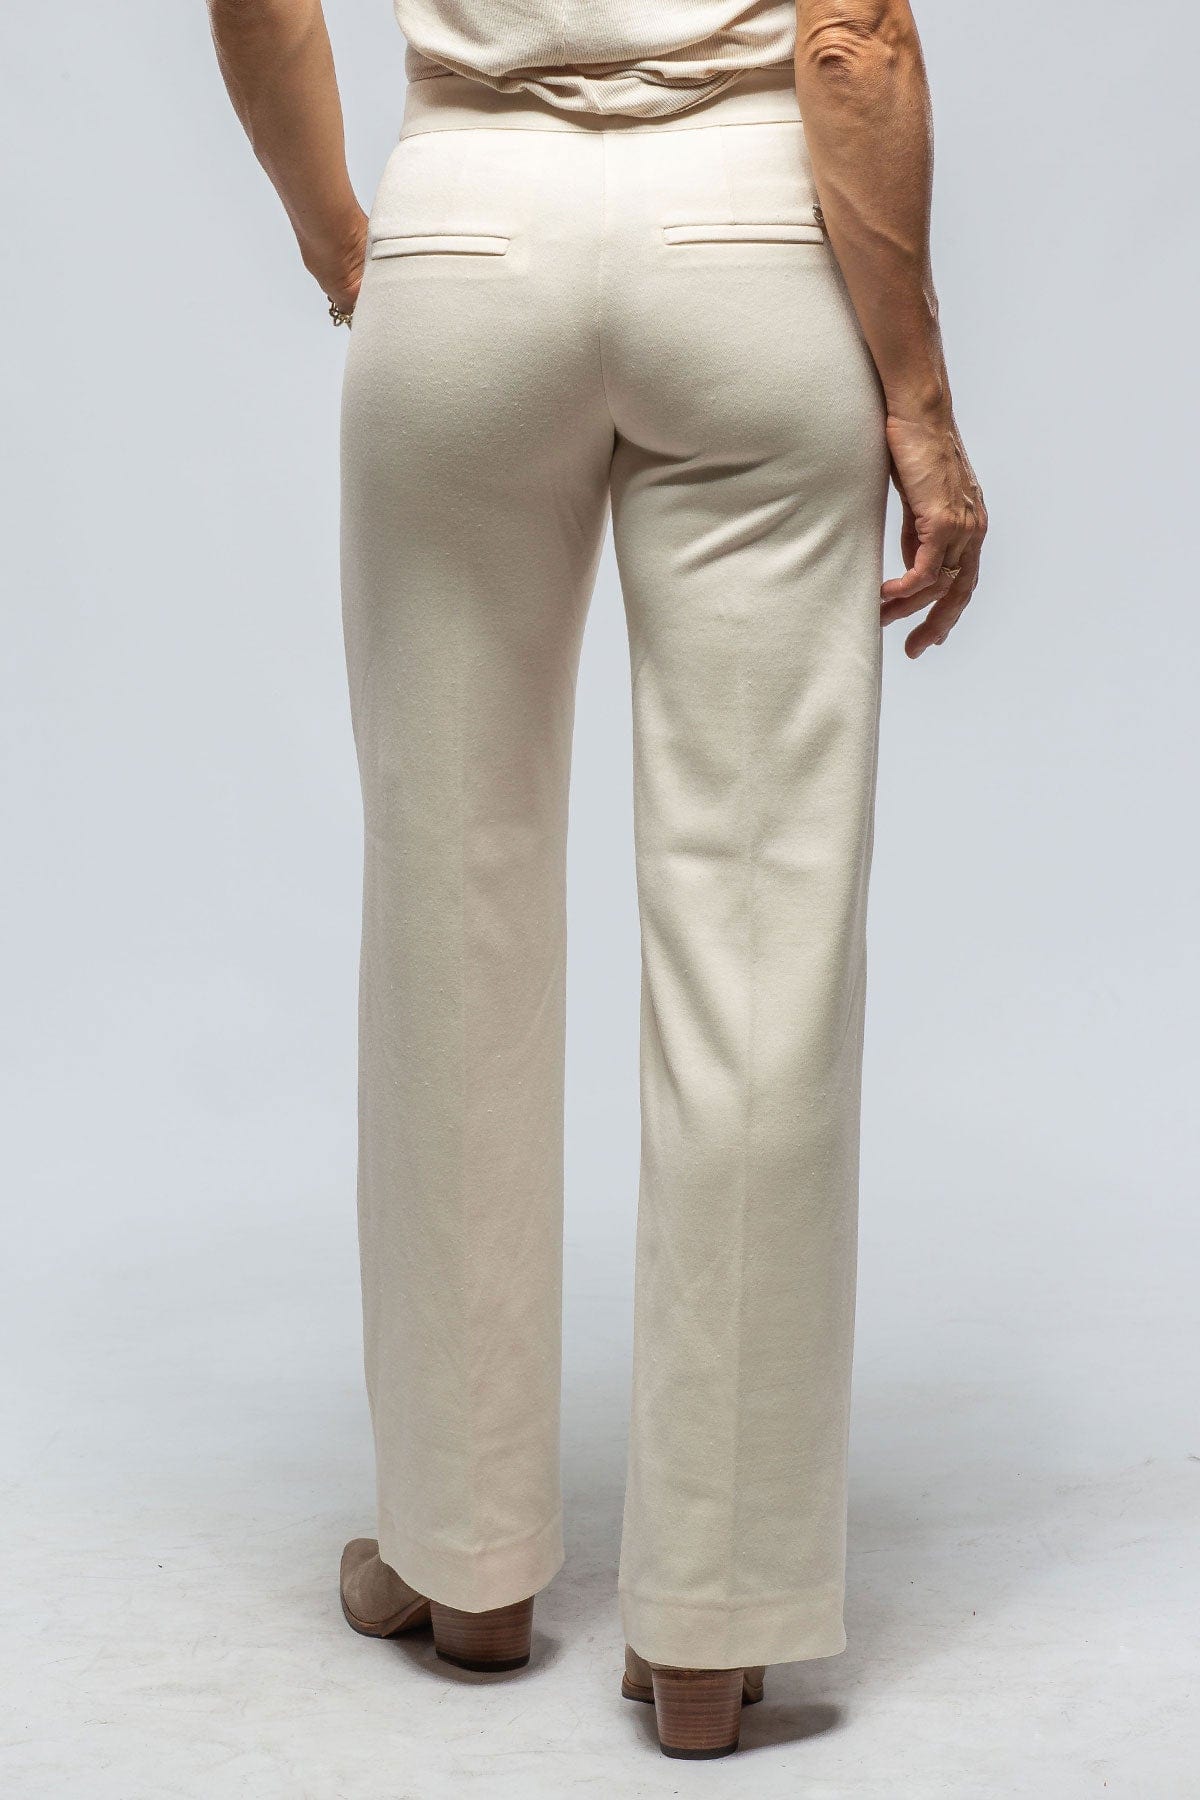 White Dyed Knit Boot Cut Trouser – SAFAROVA